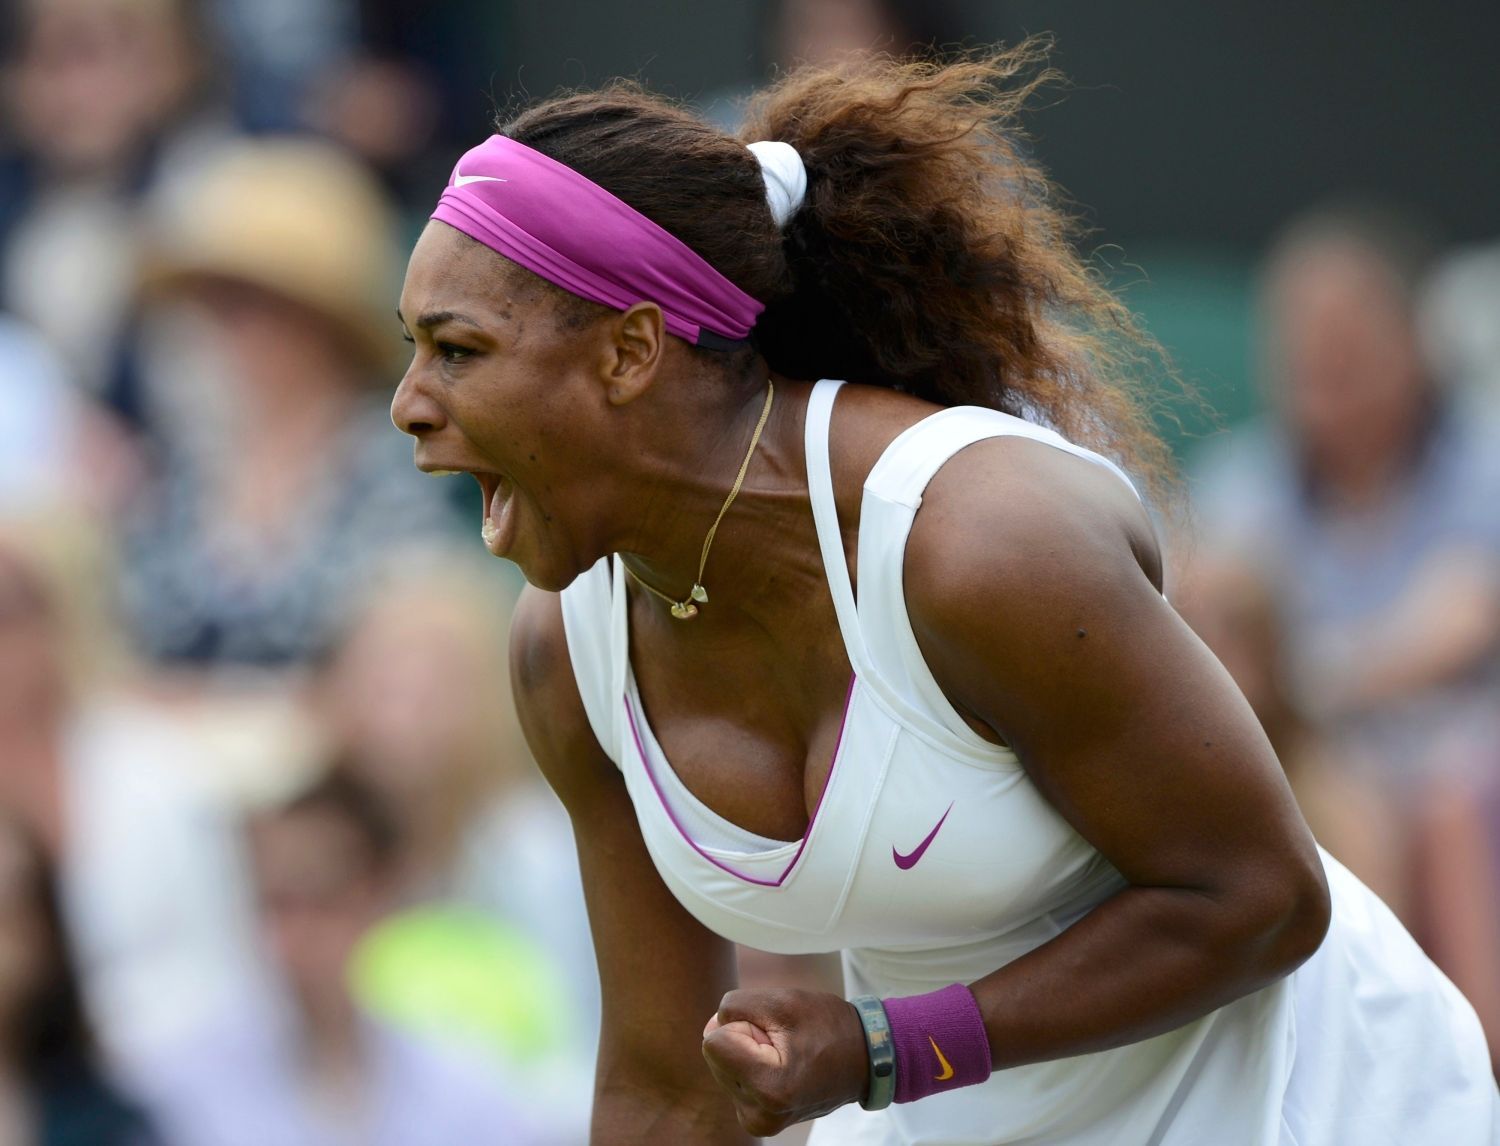 Americká tenistka  Serena Williamsová se raduje z vítězství nad Češkou Barborou Záhlavovou Strýcovou v 1. kole Wimbledonu 2012.